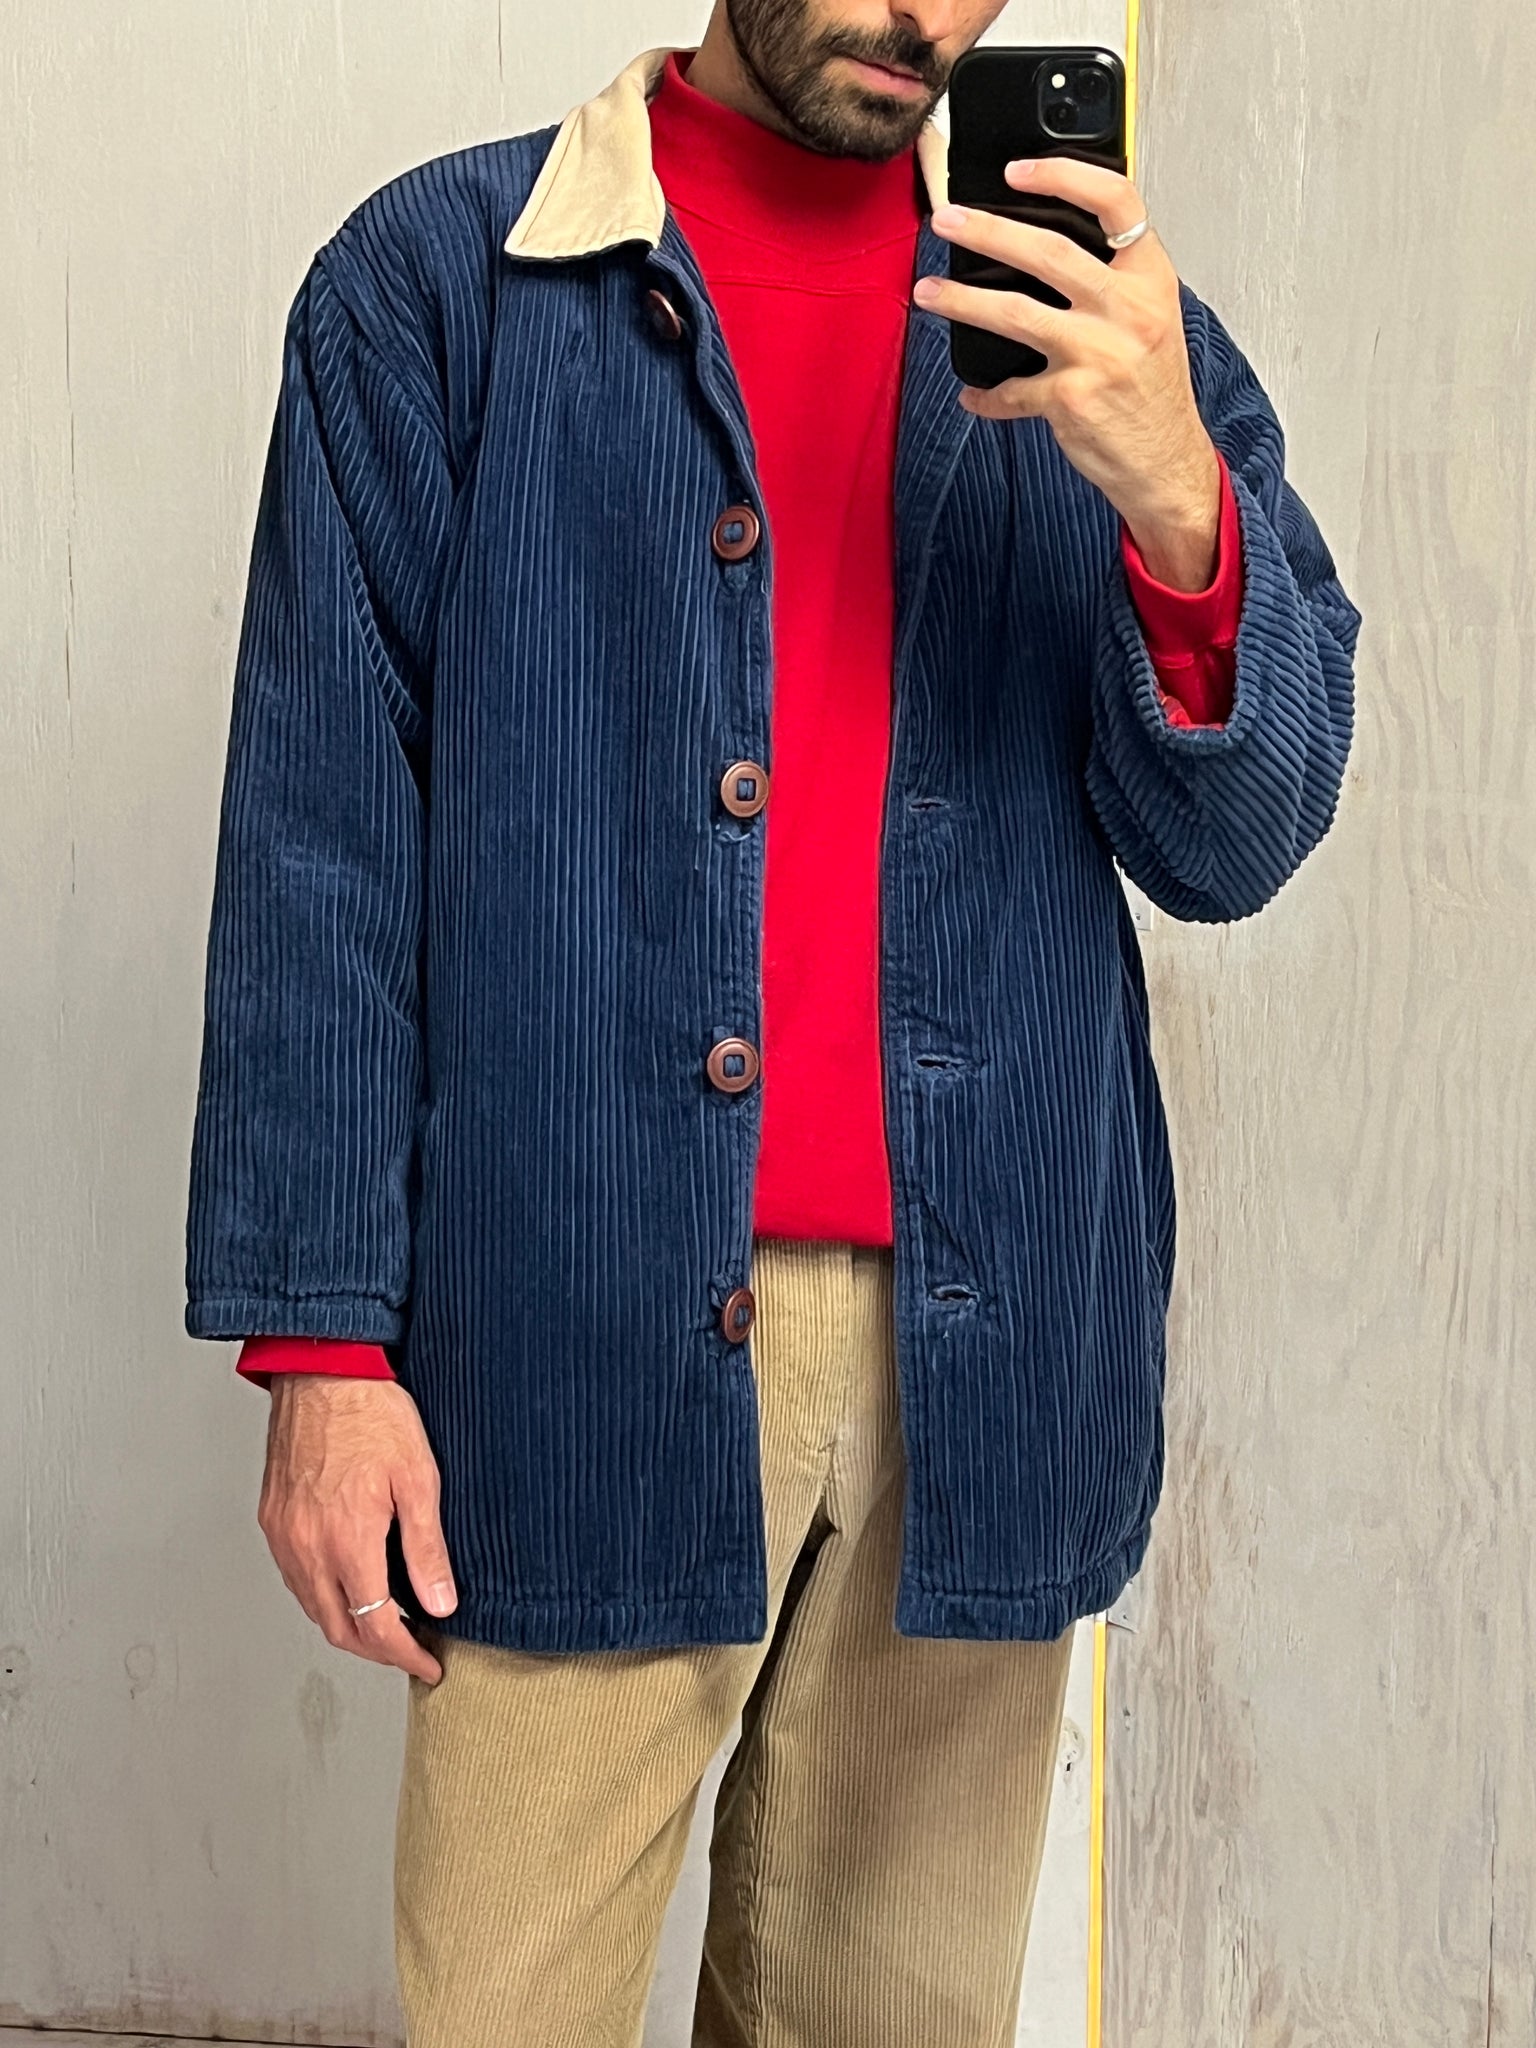 90s corduroy jacket